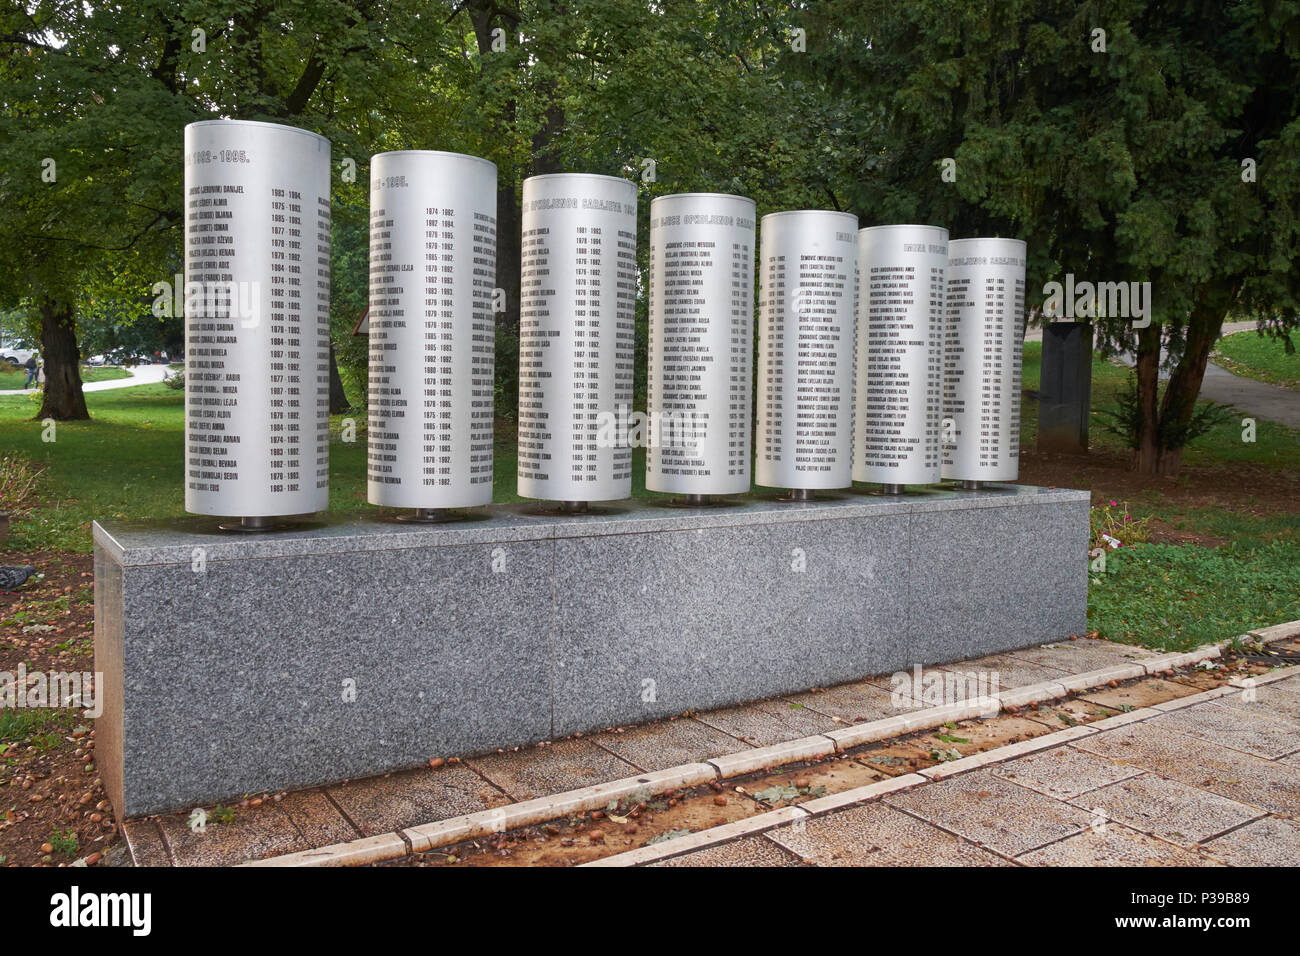 Socle portant les noms des 521 enfants tués pendant le siège de Sarajevo entre 1992 et 1996. Veliki (Grand Parc), Sarajevo, Bosnie-et-Herzégovine. Banque D'Images